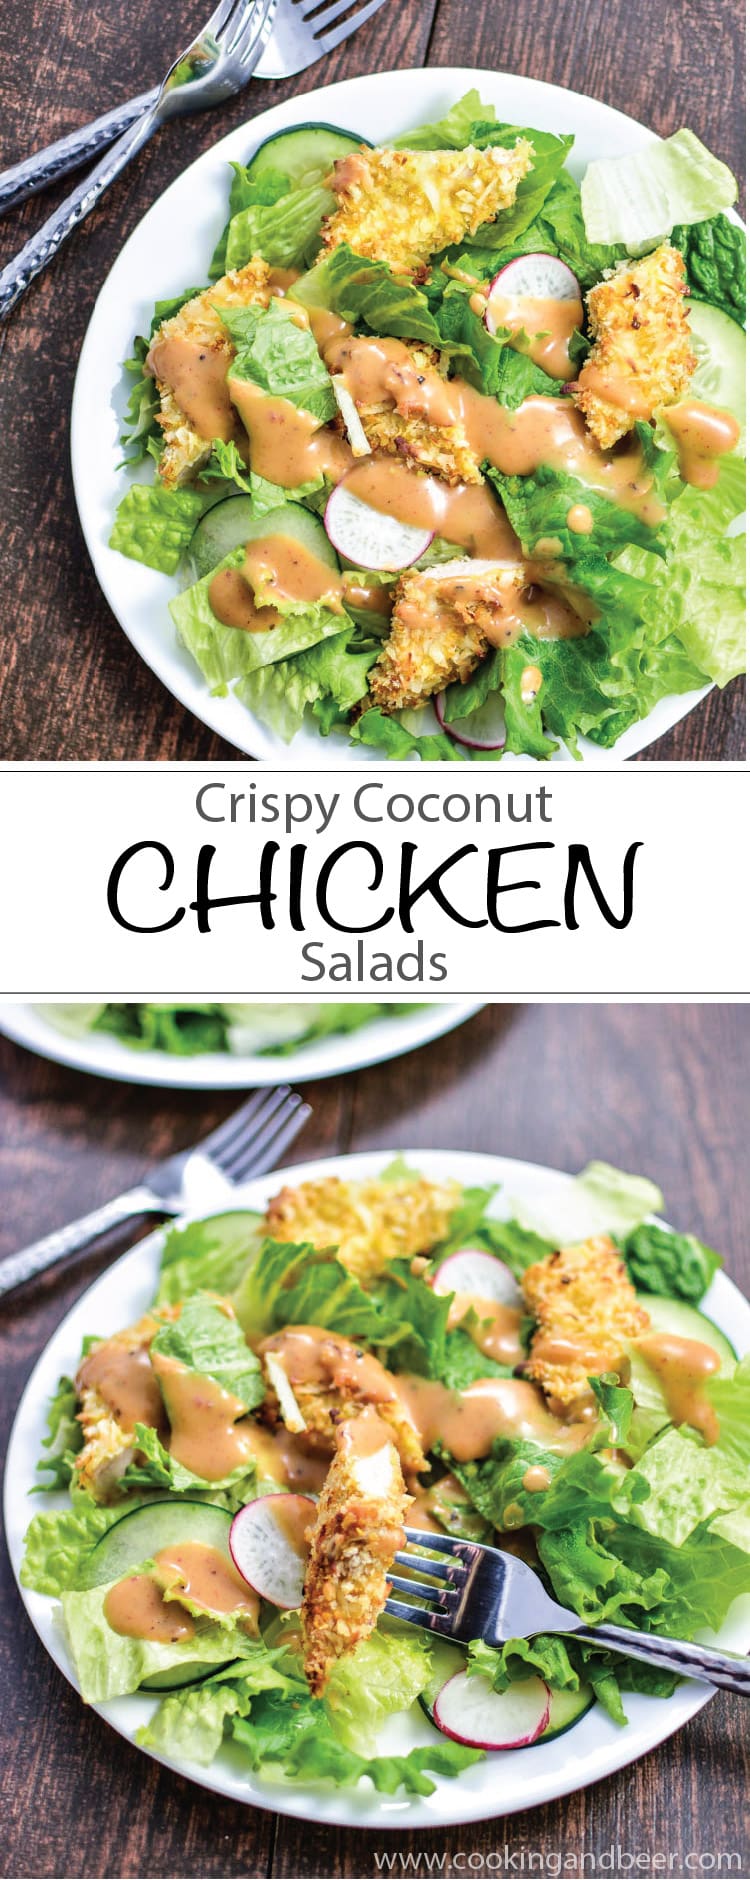 Crispy Coconut Chicken Salad Recipe